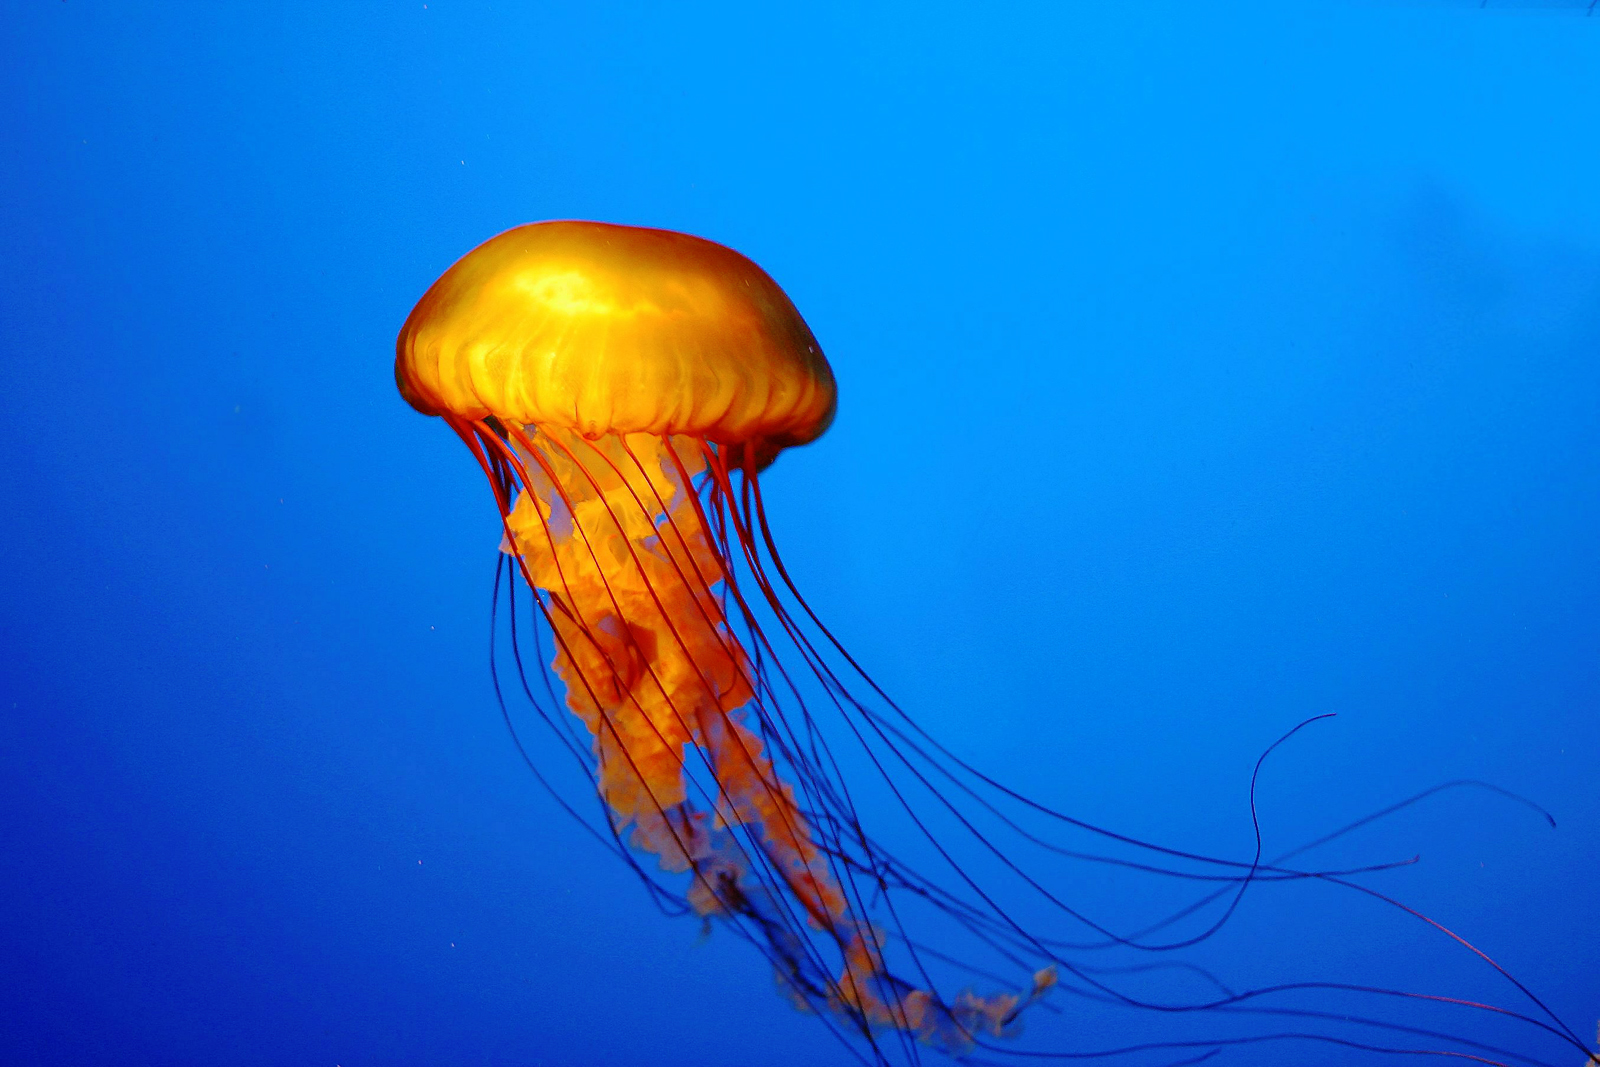 JellyfishHD Funny Doblelol